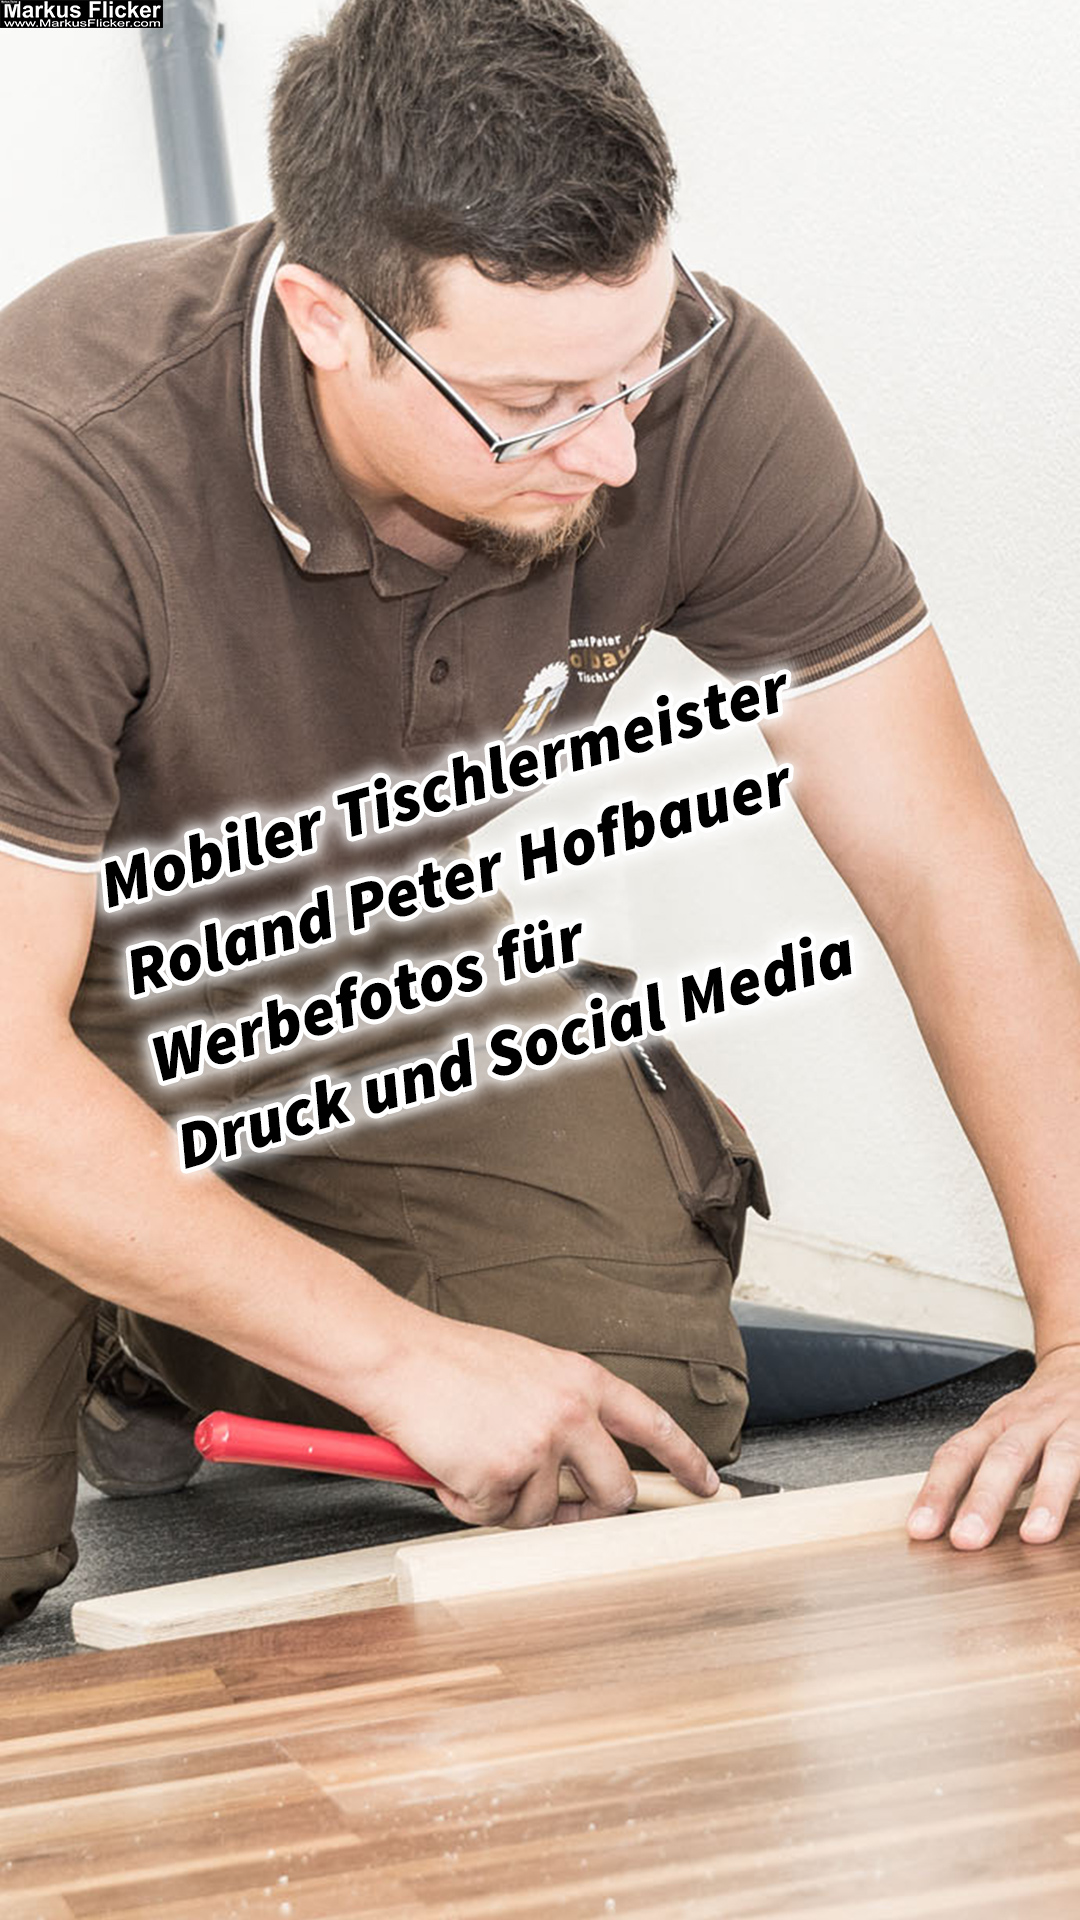 Mobiler Tischlermeister Roland Peter Hofbauer Werbefotos für Druck und Social Media